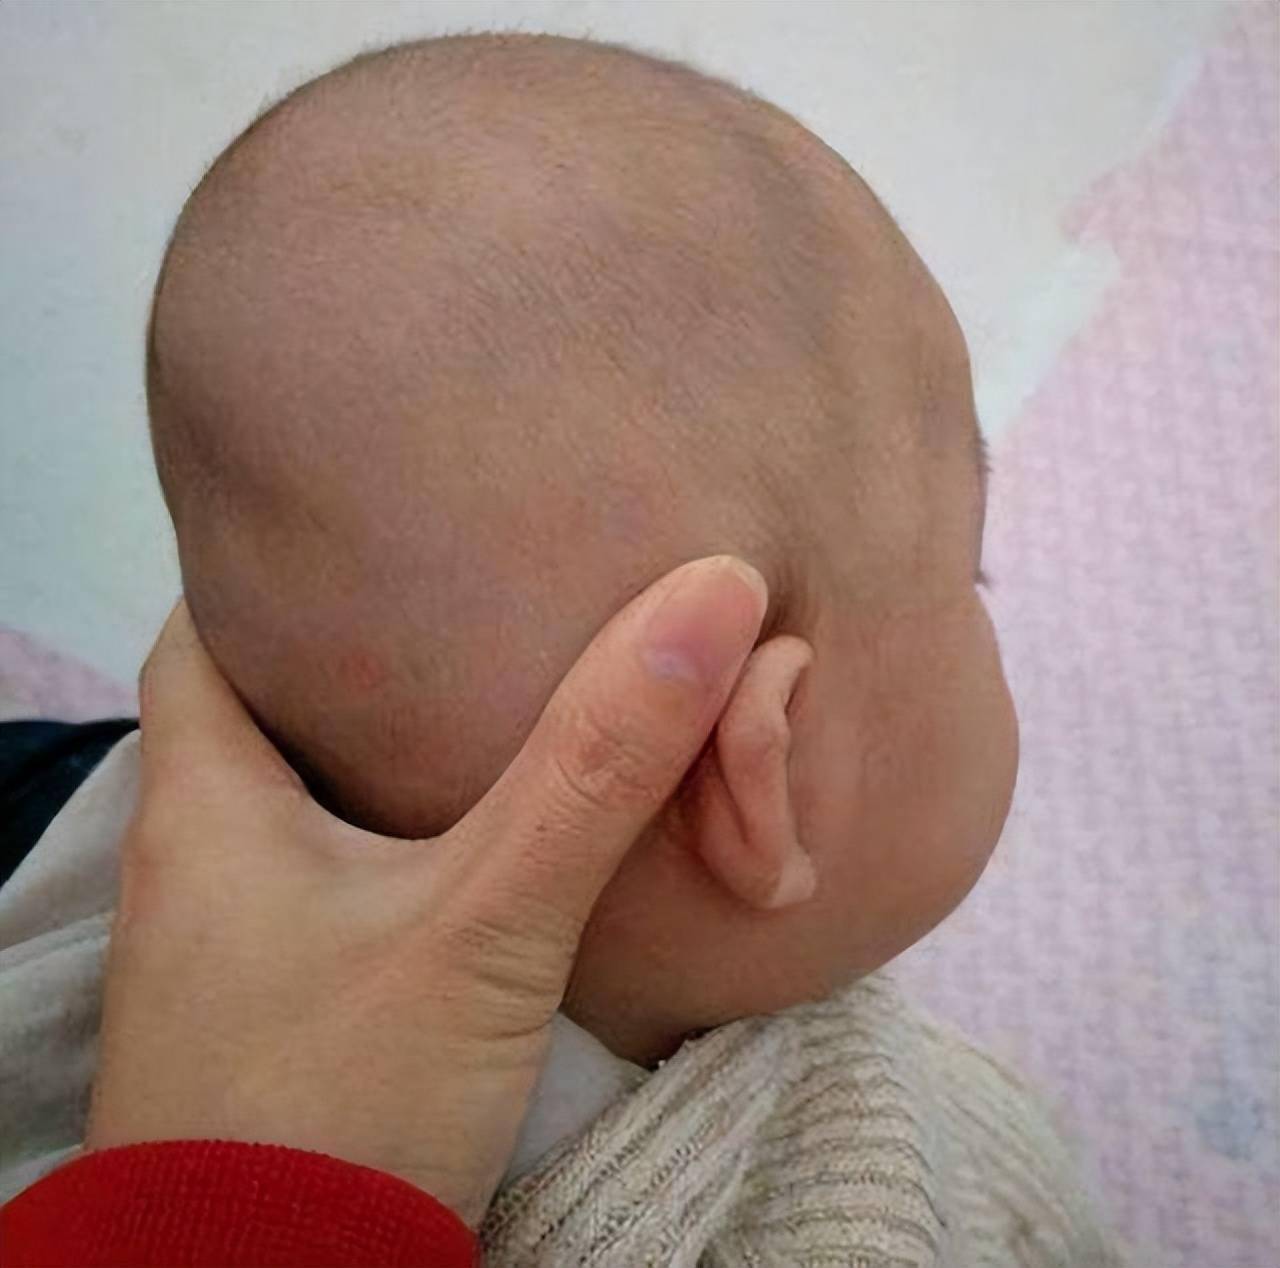 婴儿冠状缝图片